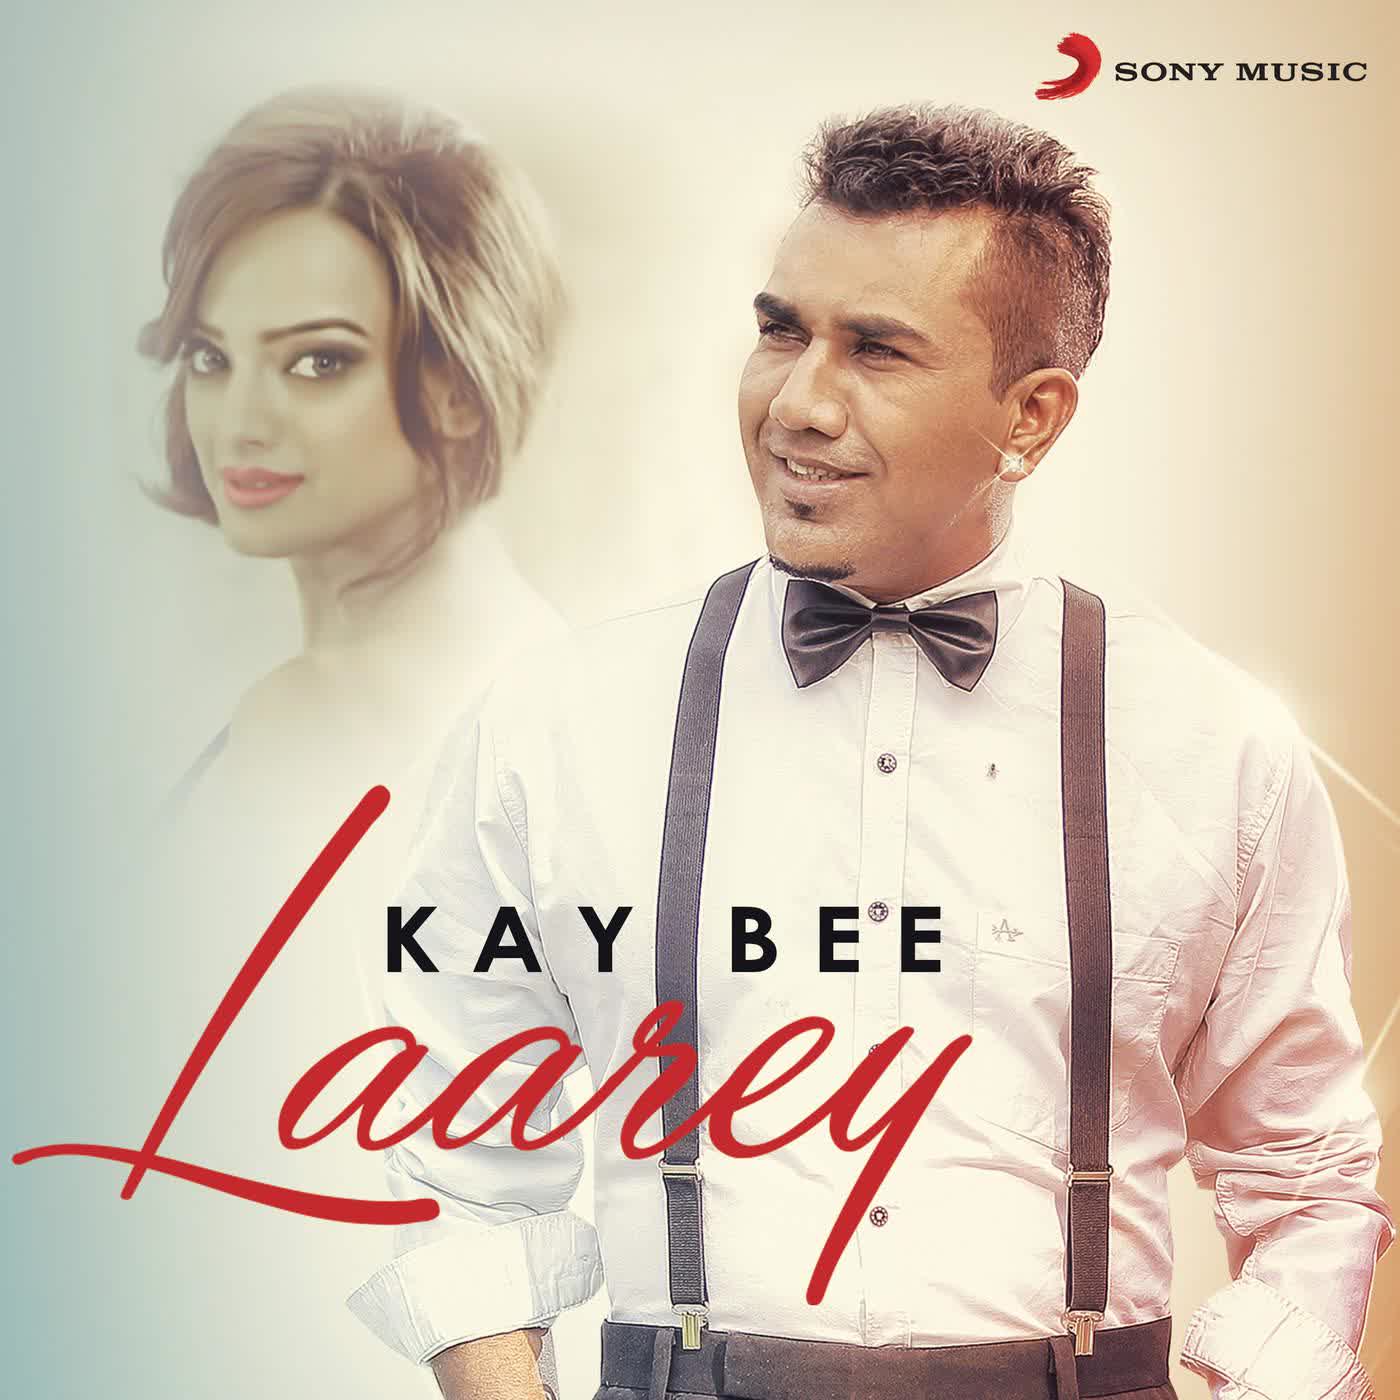 Laarey Kay Bee  Mp3 song download